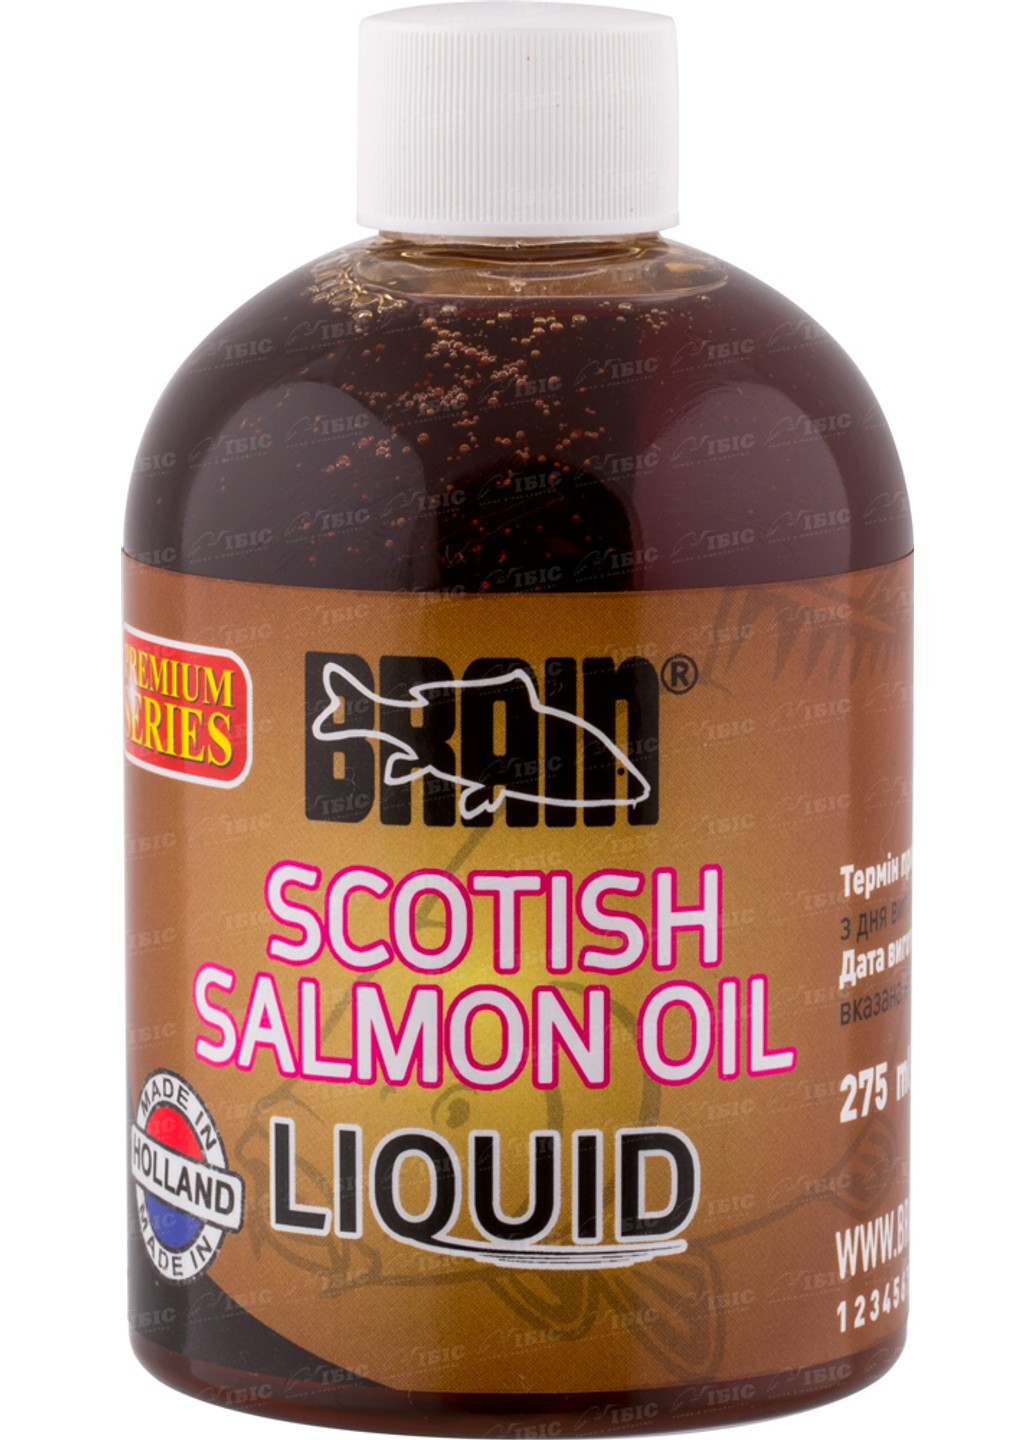 Ликвид Scotisch salmon oil 275 ml (1858-01-55) Brain (252651680)